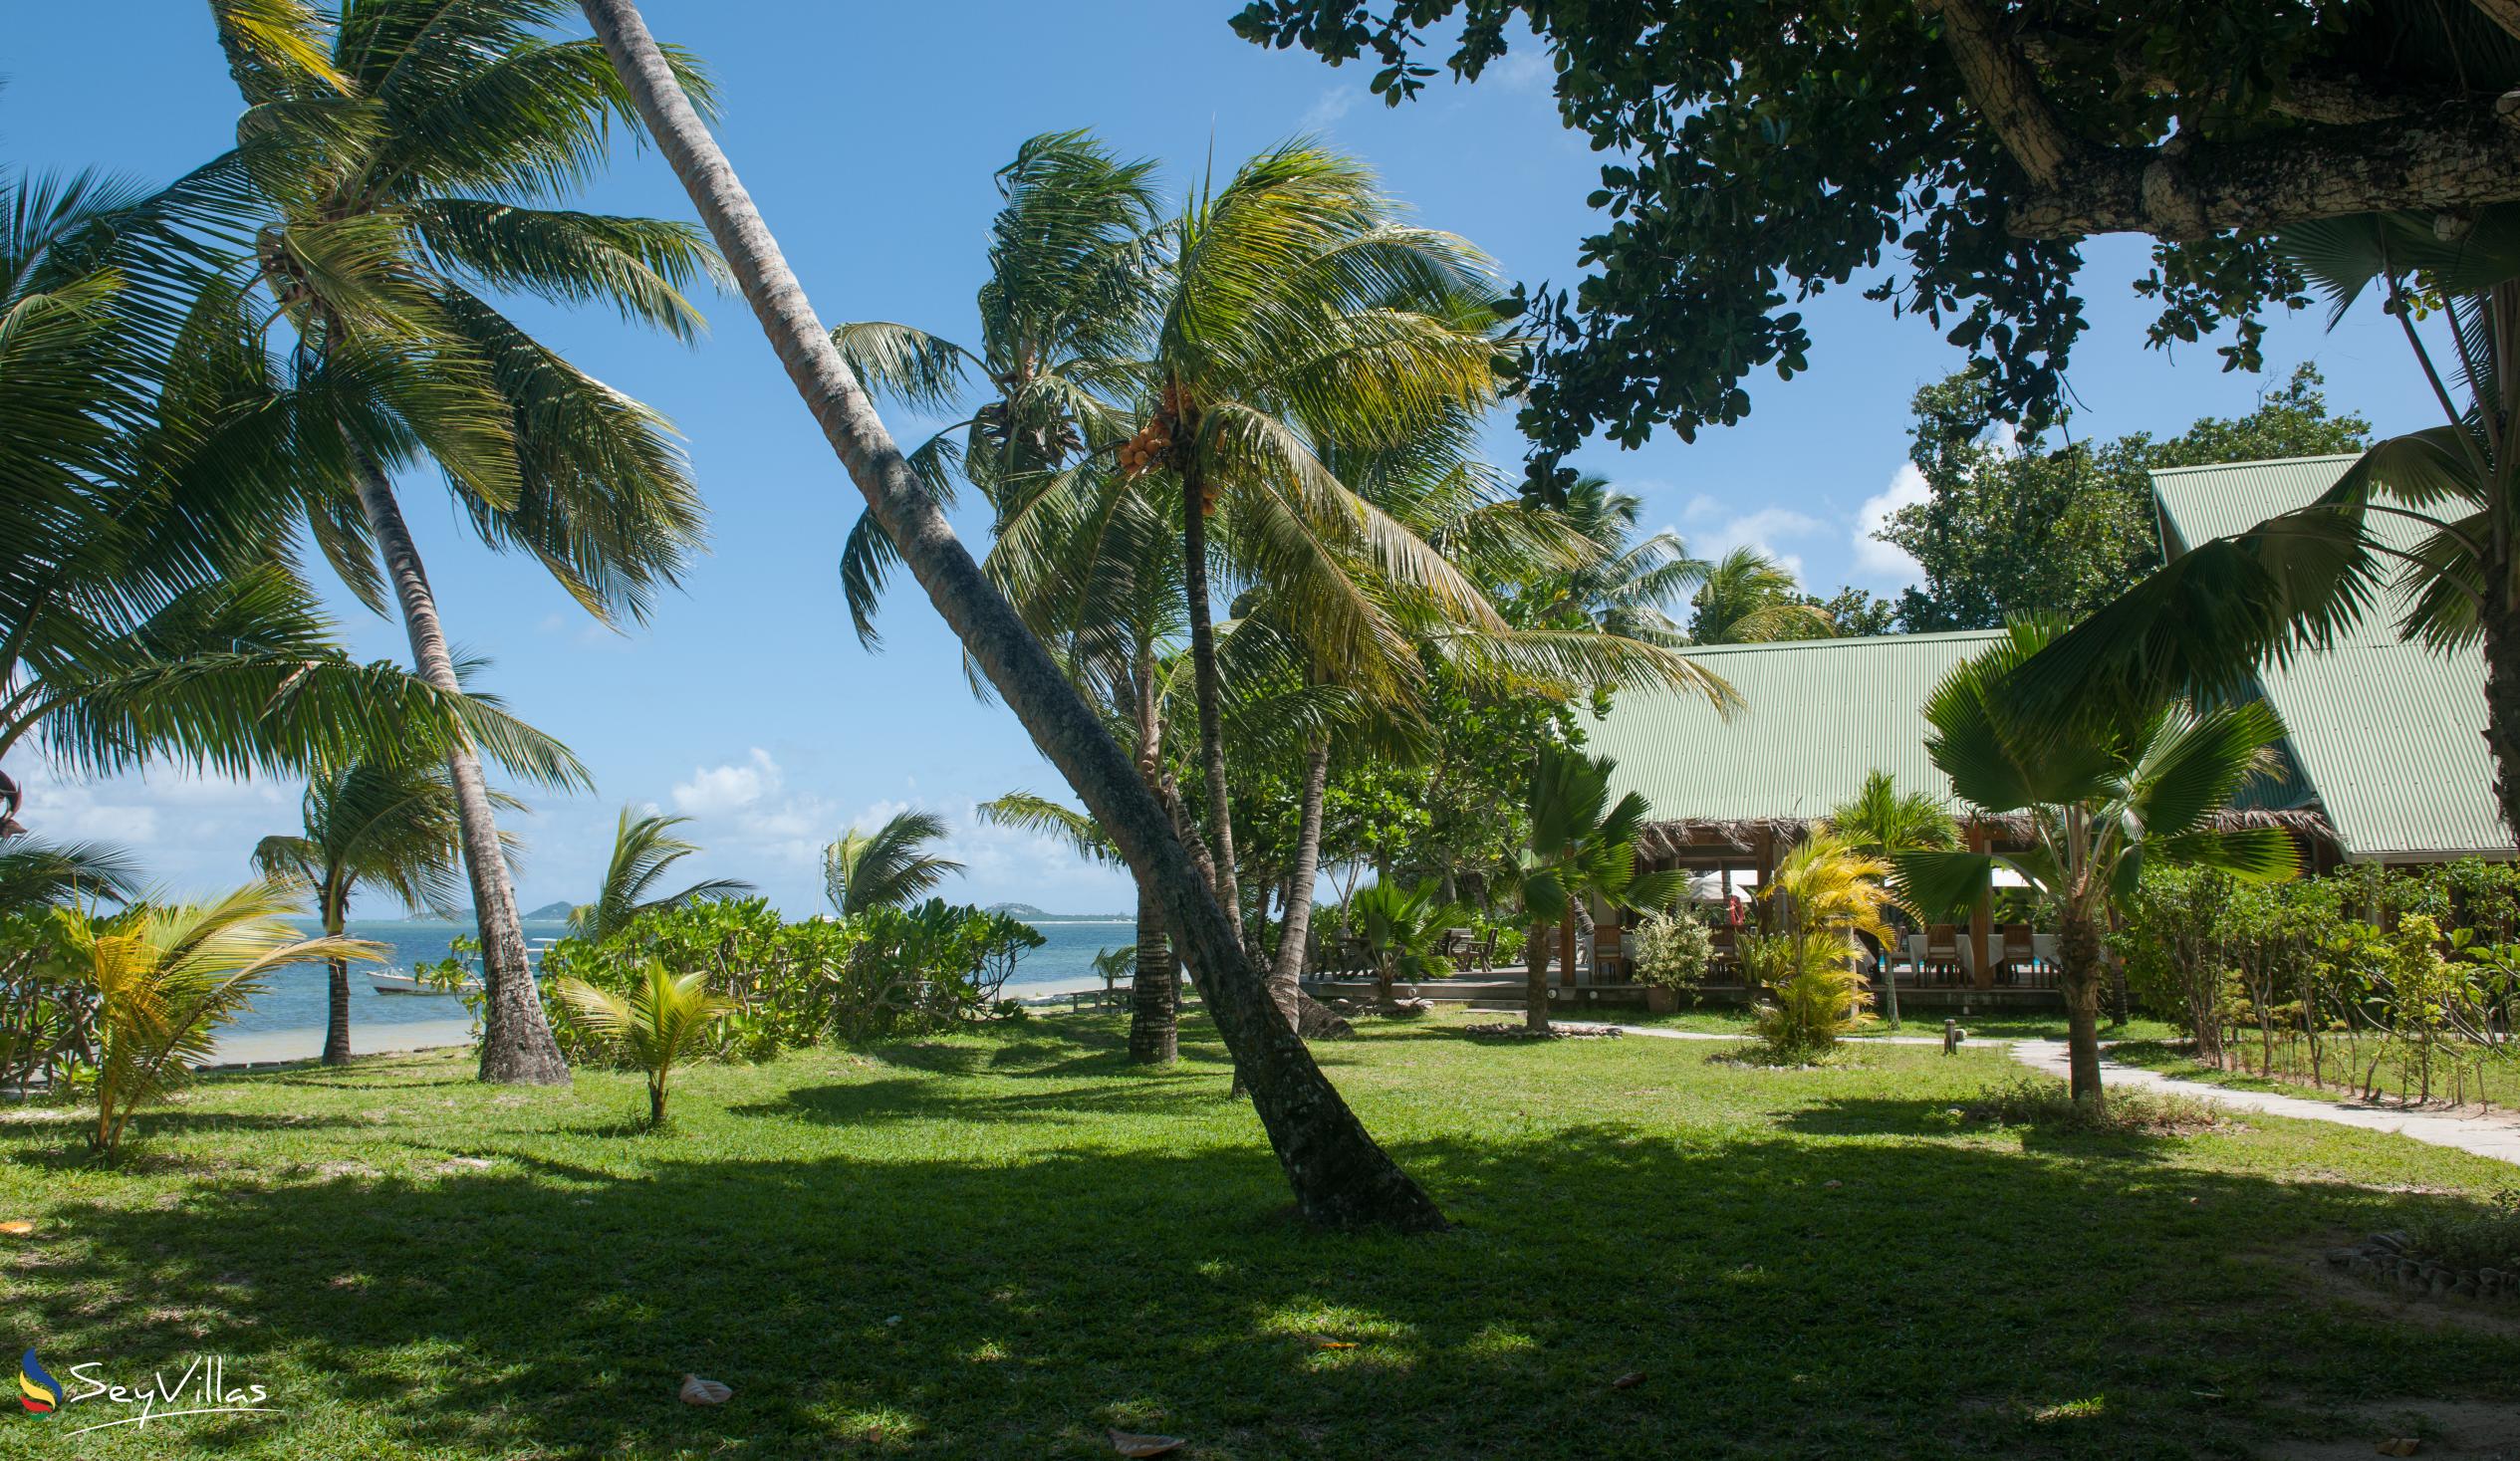 Foto 14: Indian Ocean Lodge - Aussenbereich - Praslin (Seychellen)